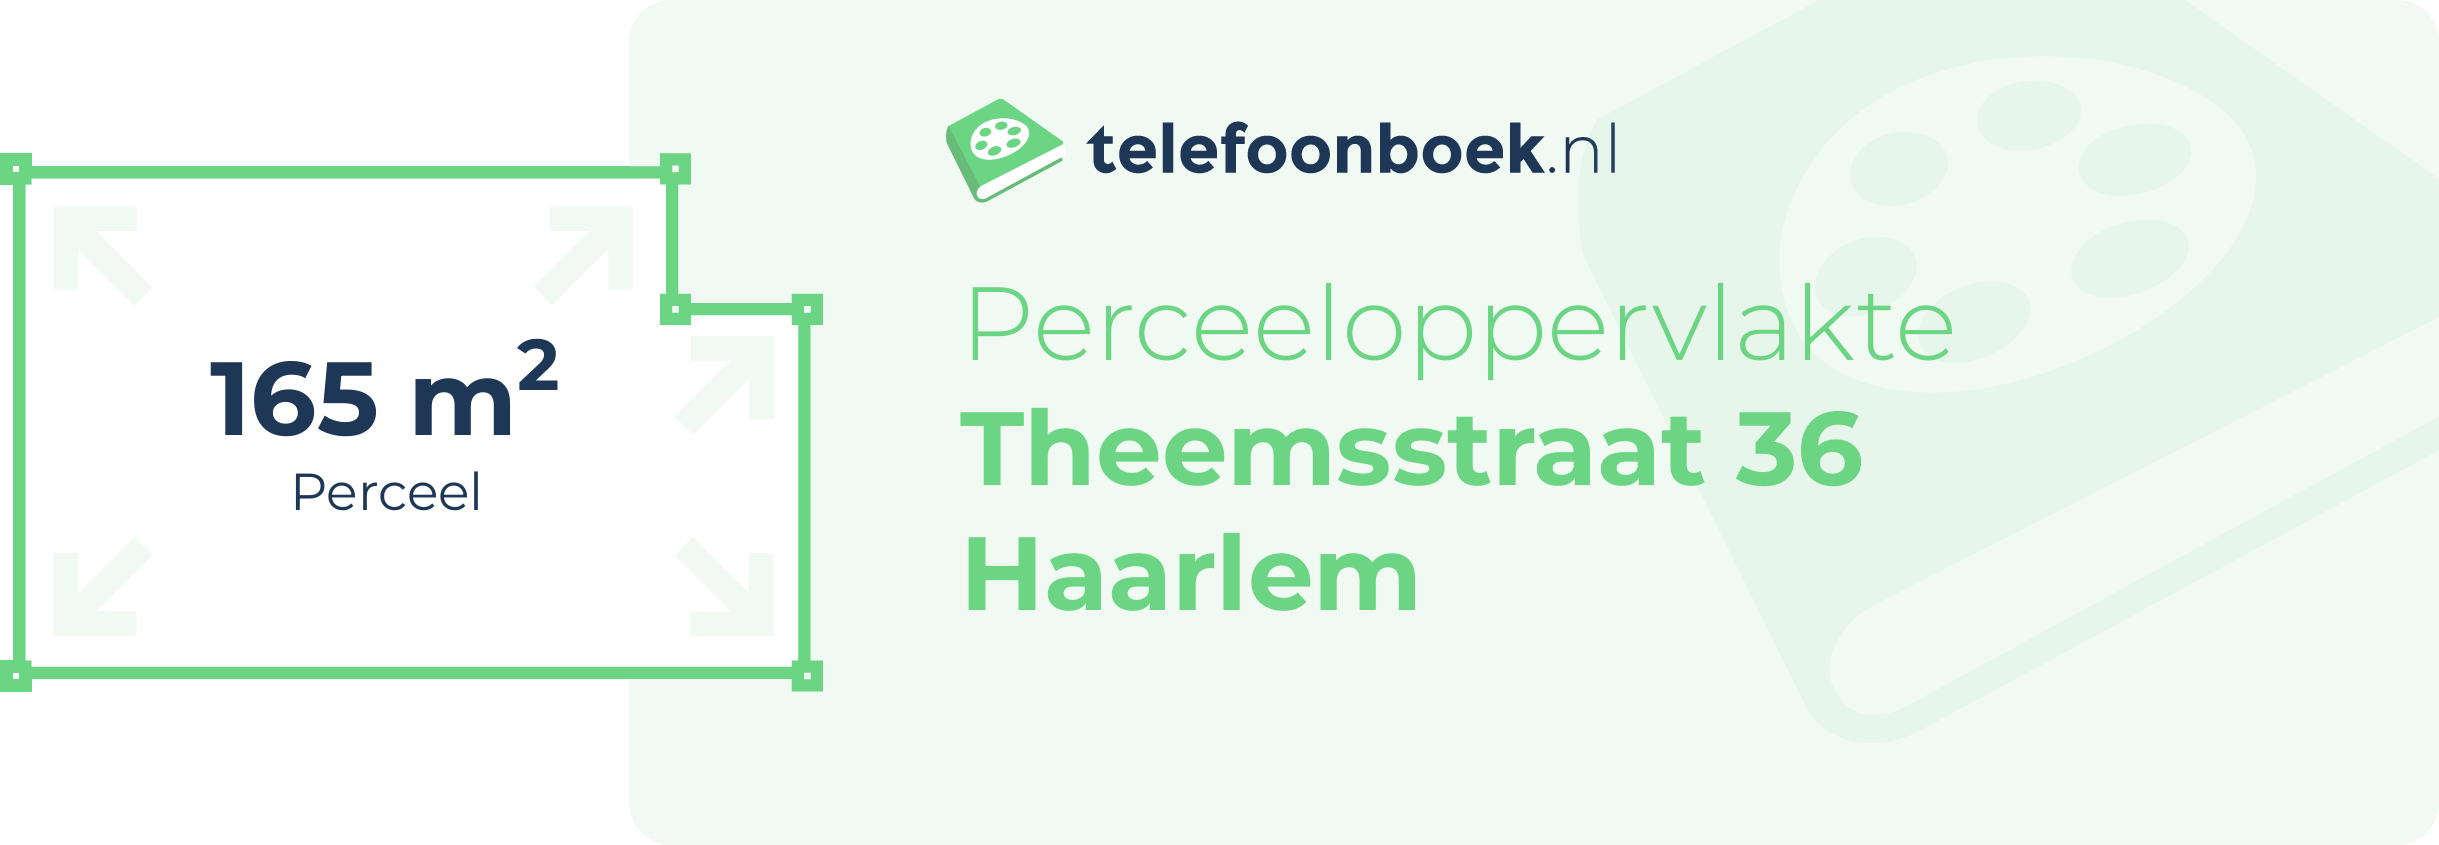 Perceeloppervlakte Theemsstraat 36 Haarlem